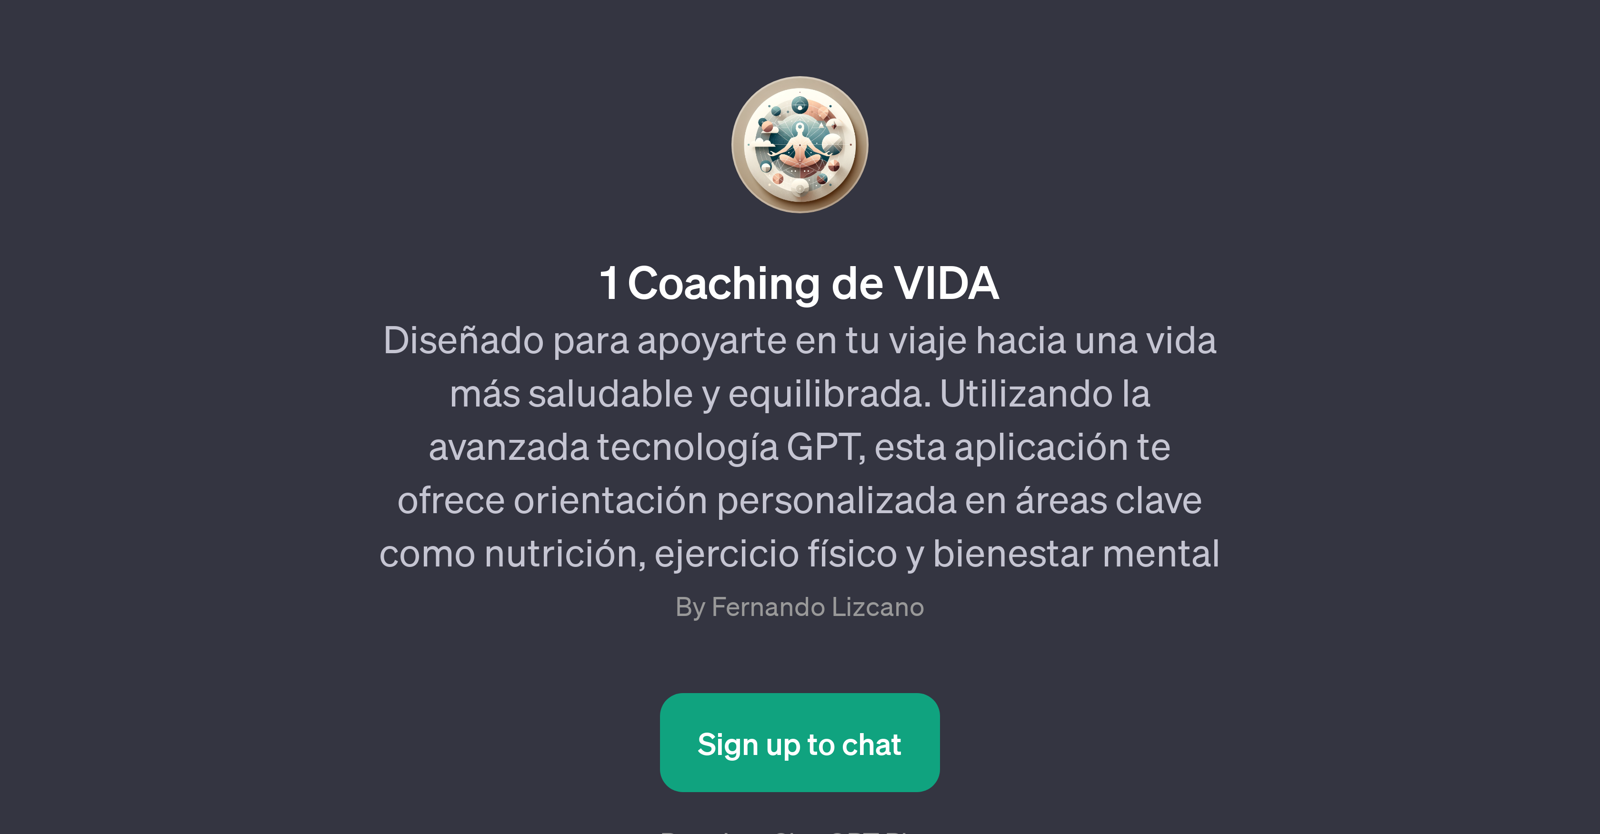 1 Coaching de VIDA website